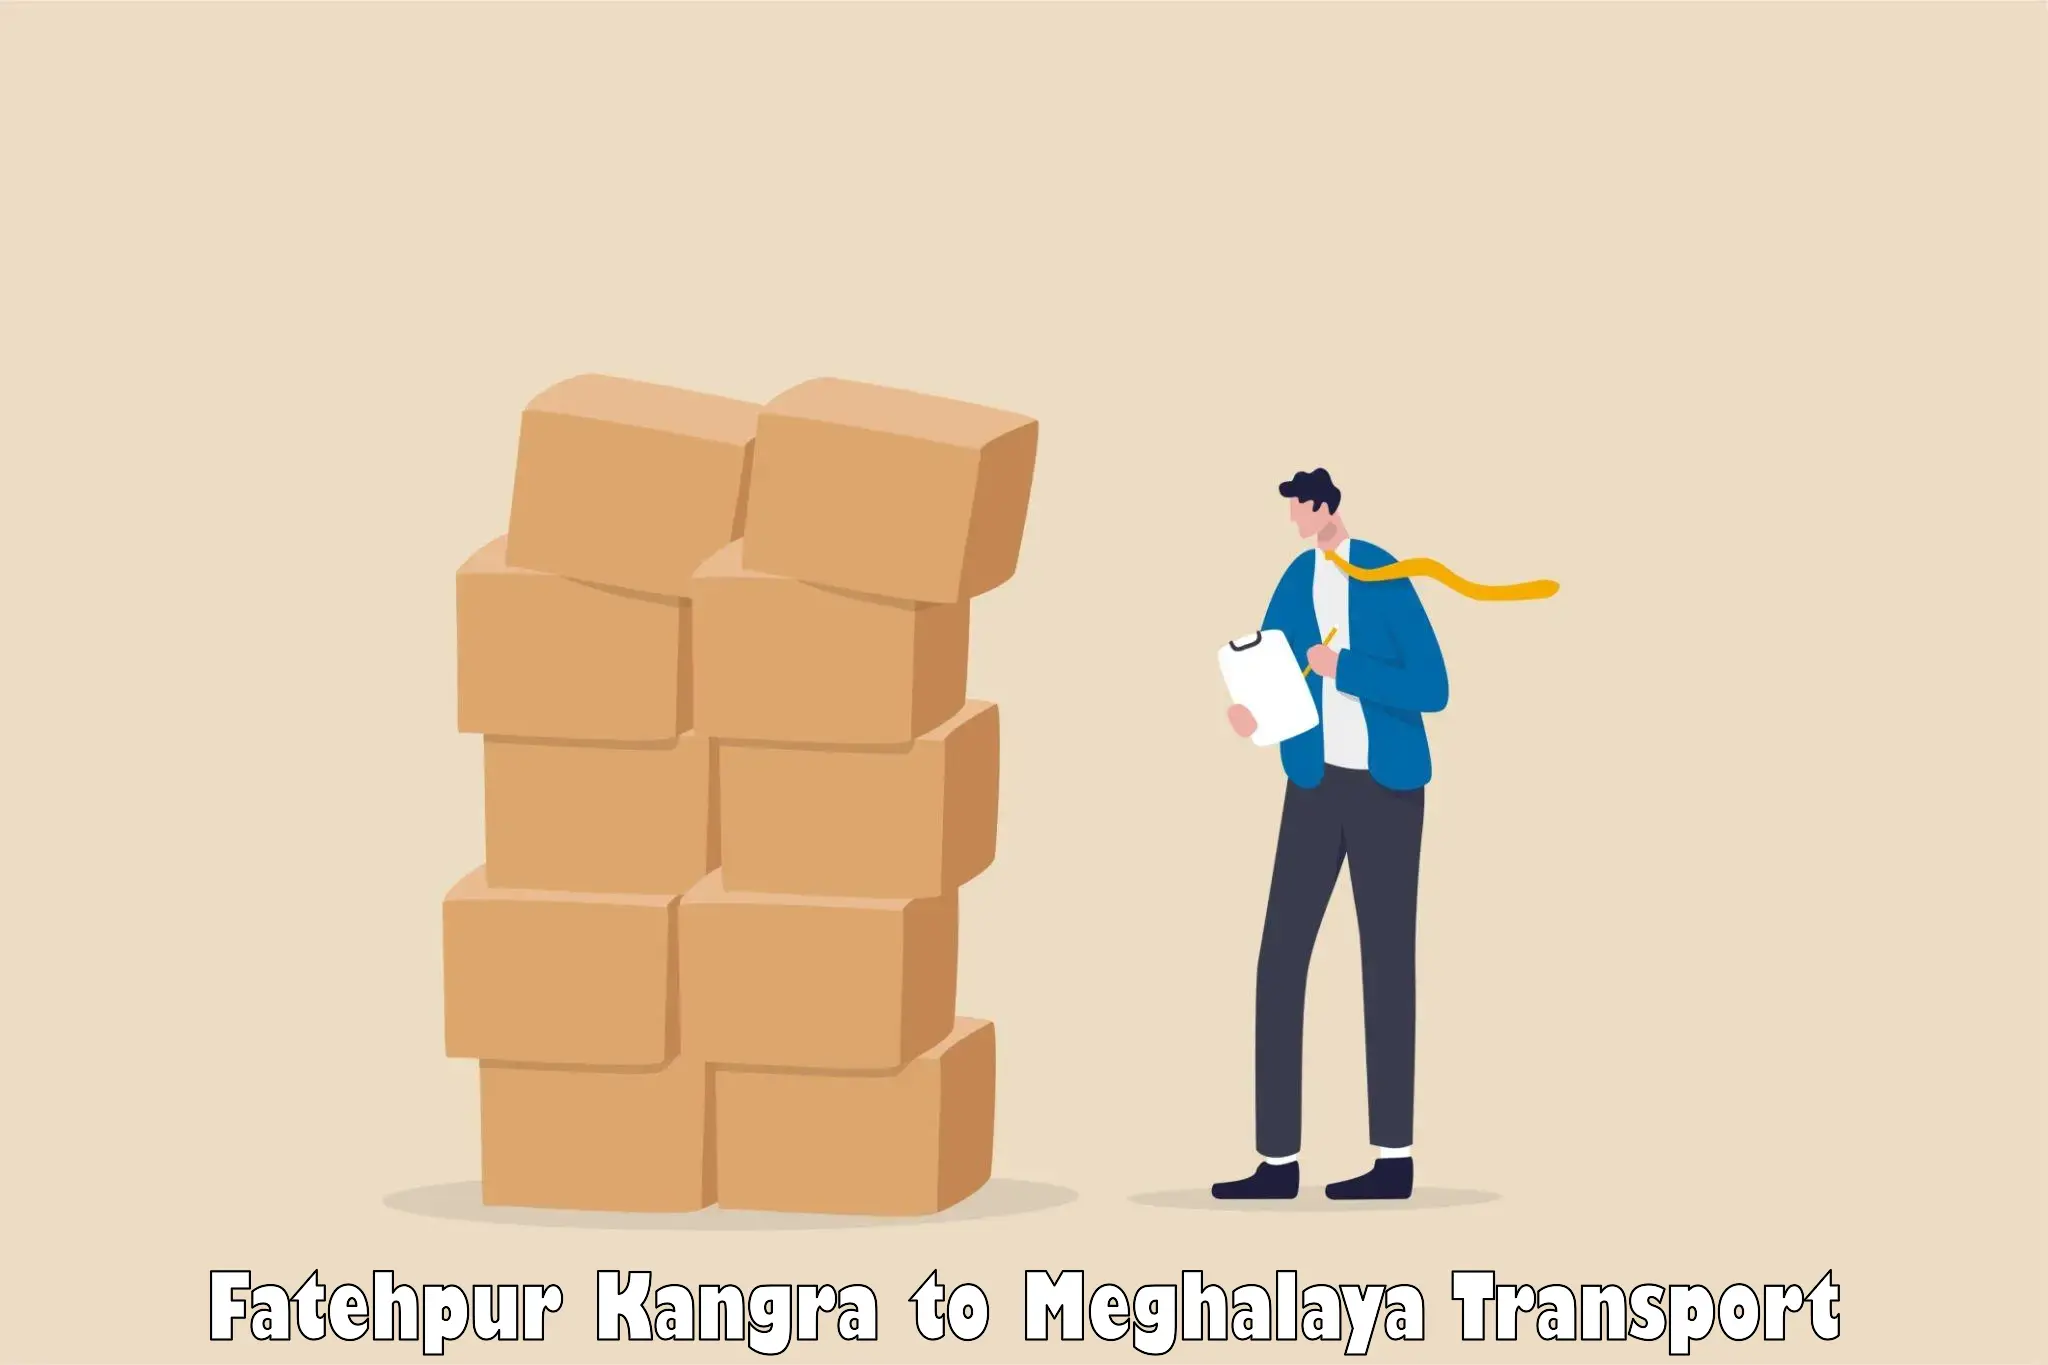 Furniture transport service Fatehpur Kangra to NIT Meghalaya